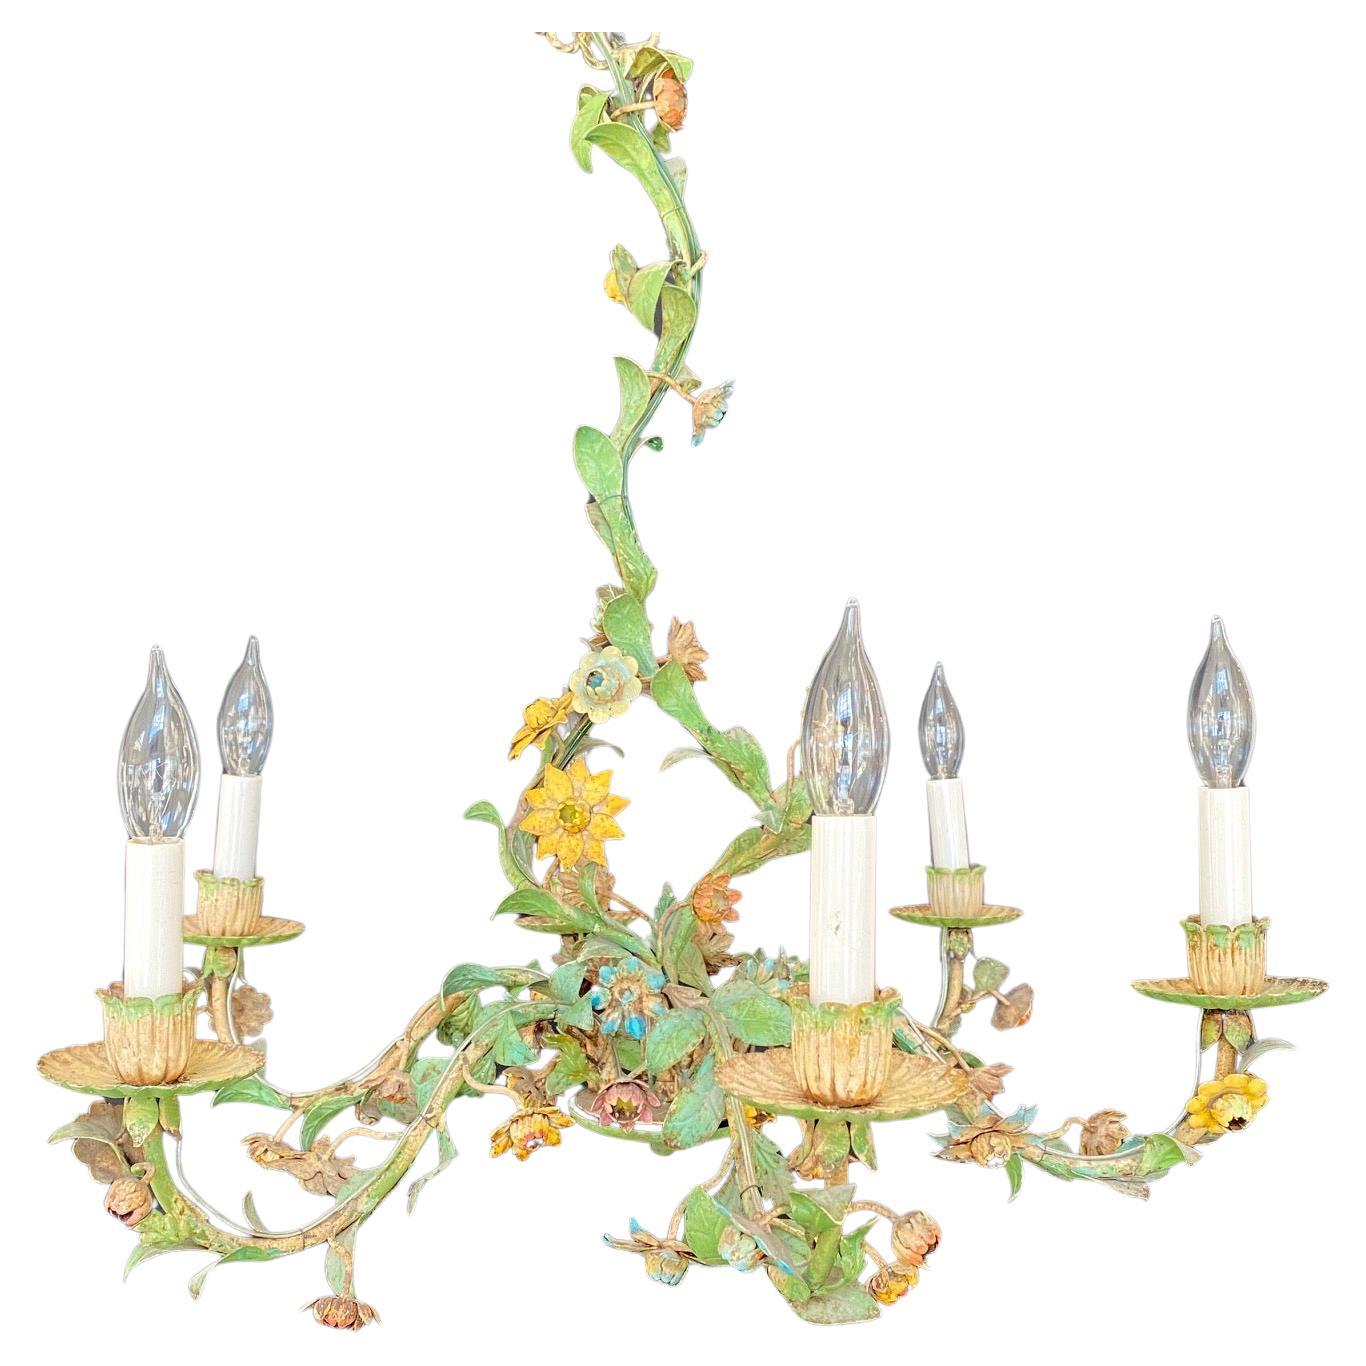 Ravissant lustre floral en tole peint de style Hollywood Regency avec des feuilles et des vignes, fabriqué en Italie. Lustre italien du milieu du 20e siècle à six bras de lumière. Ce charmant lustre peint à la main présente un enroulement de